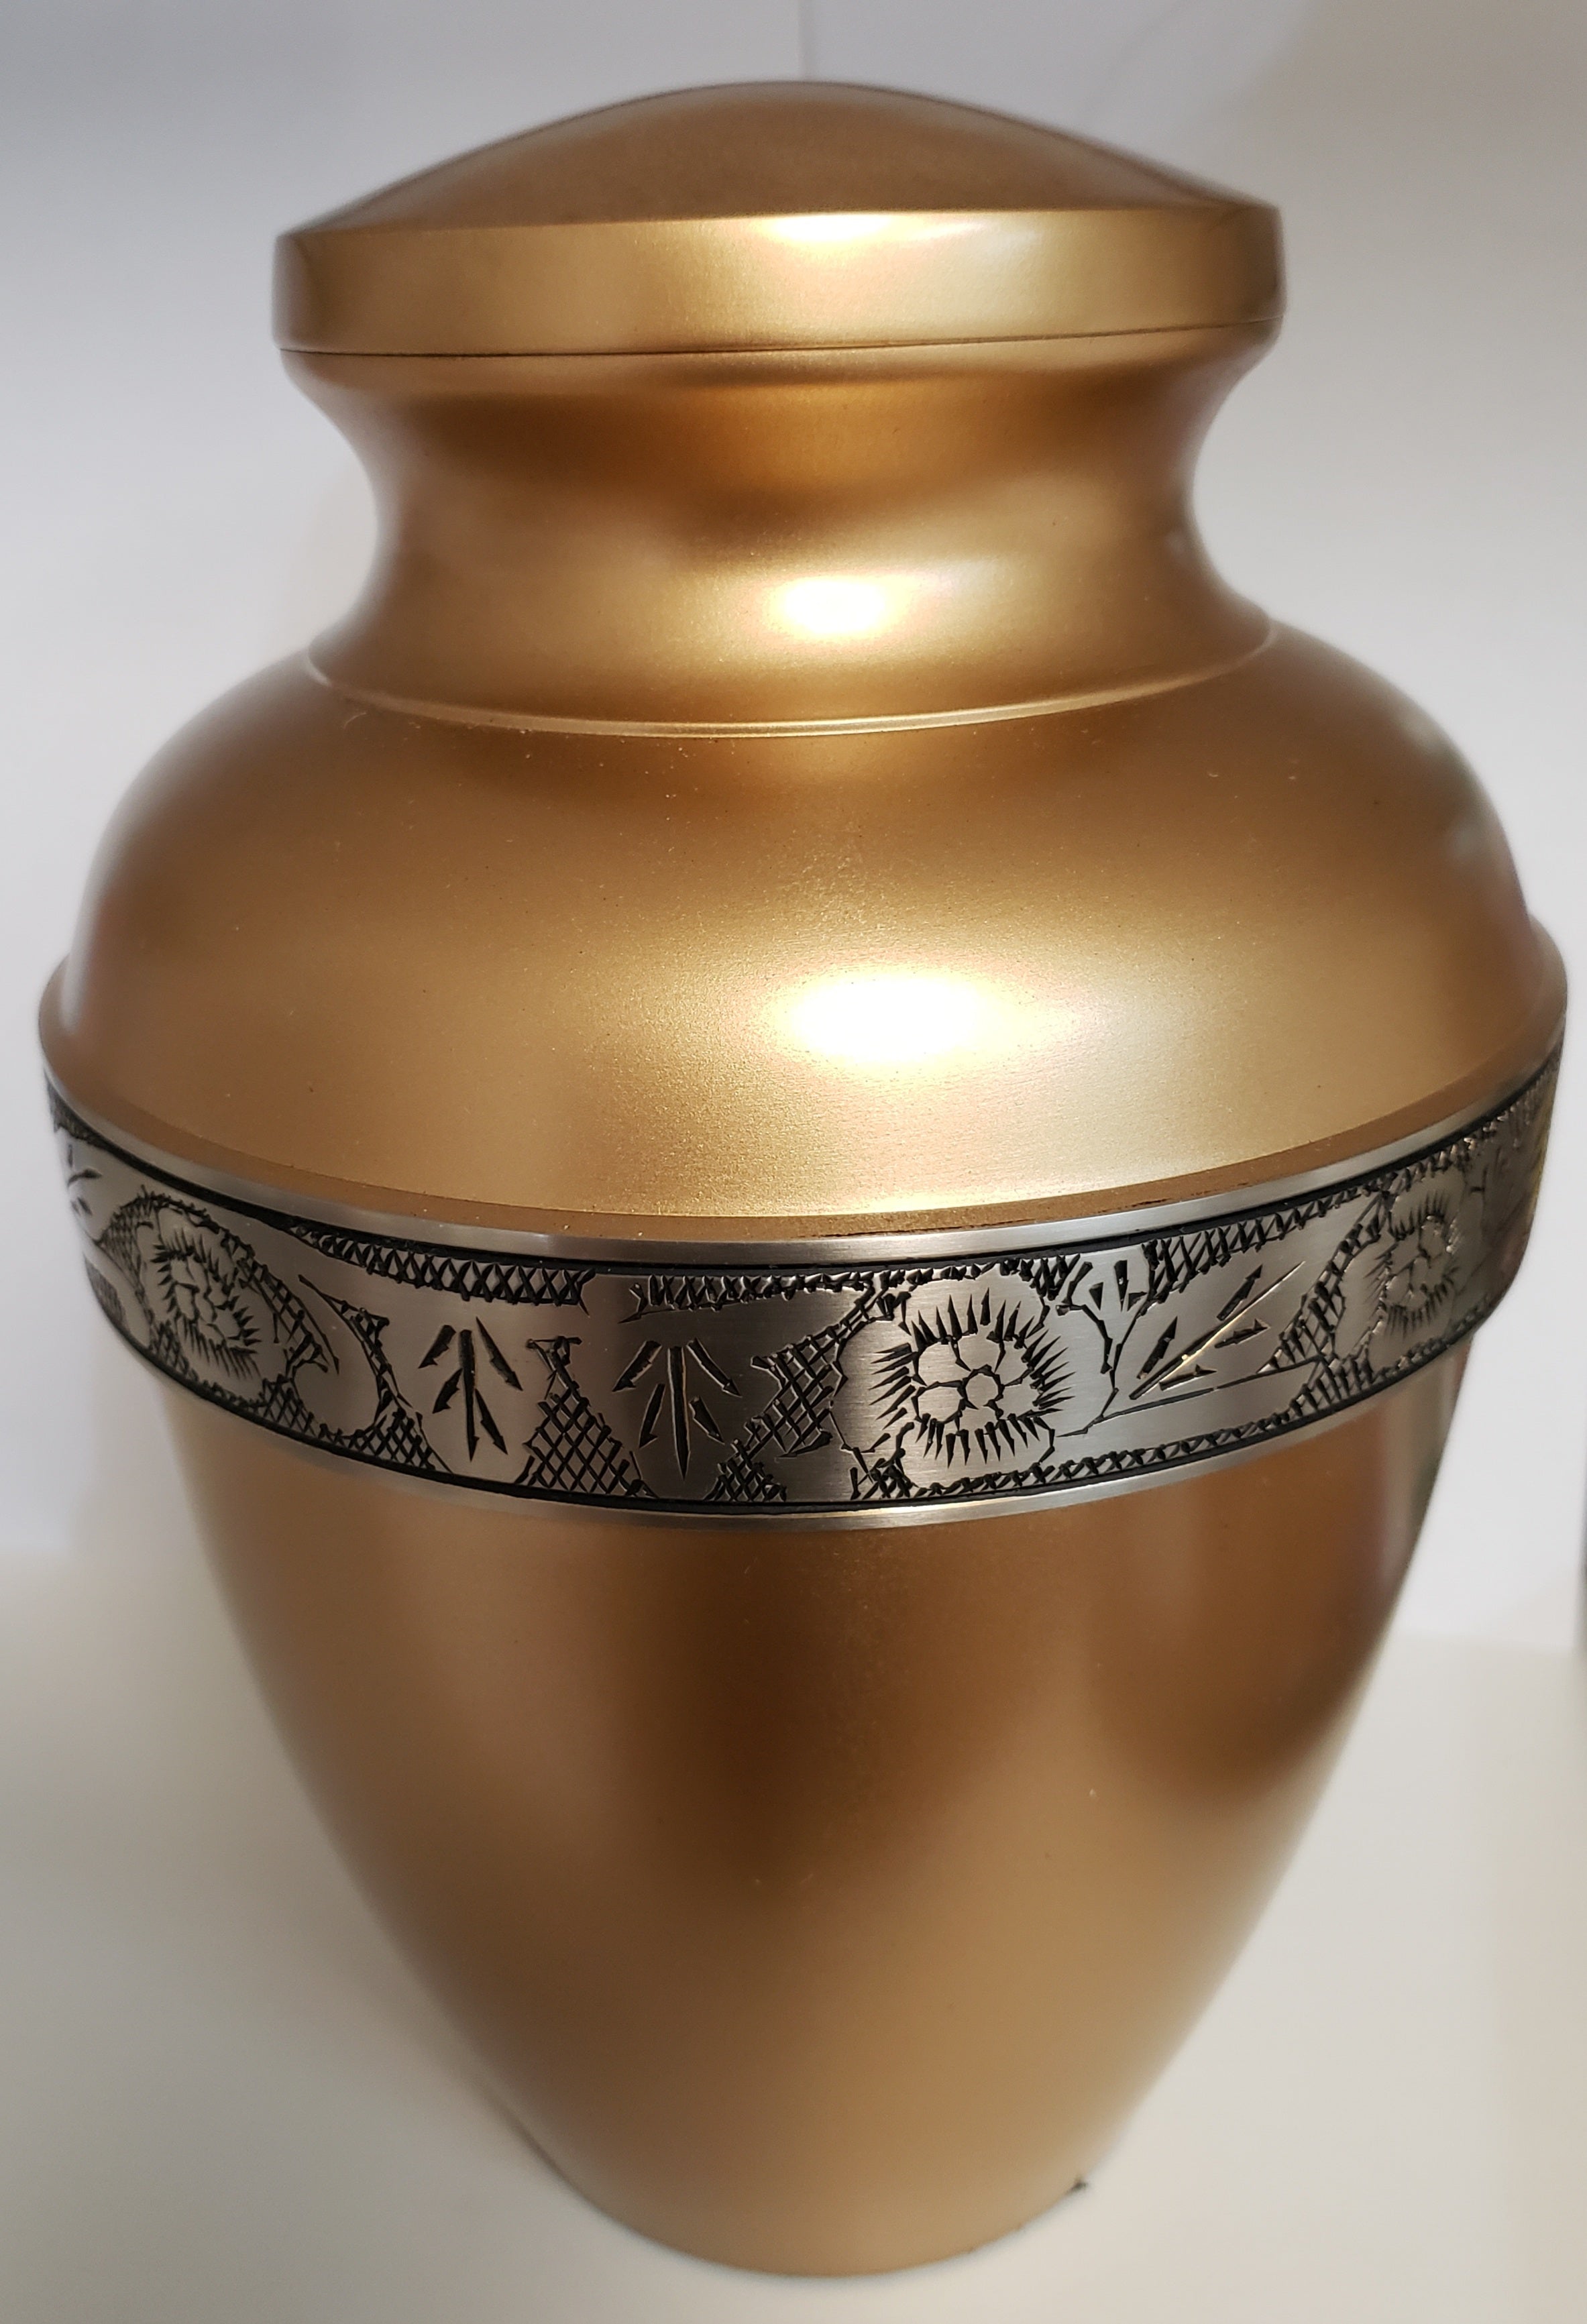 Brass Cremation Urn - 10 1/2"H x 6 1/4"W